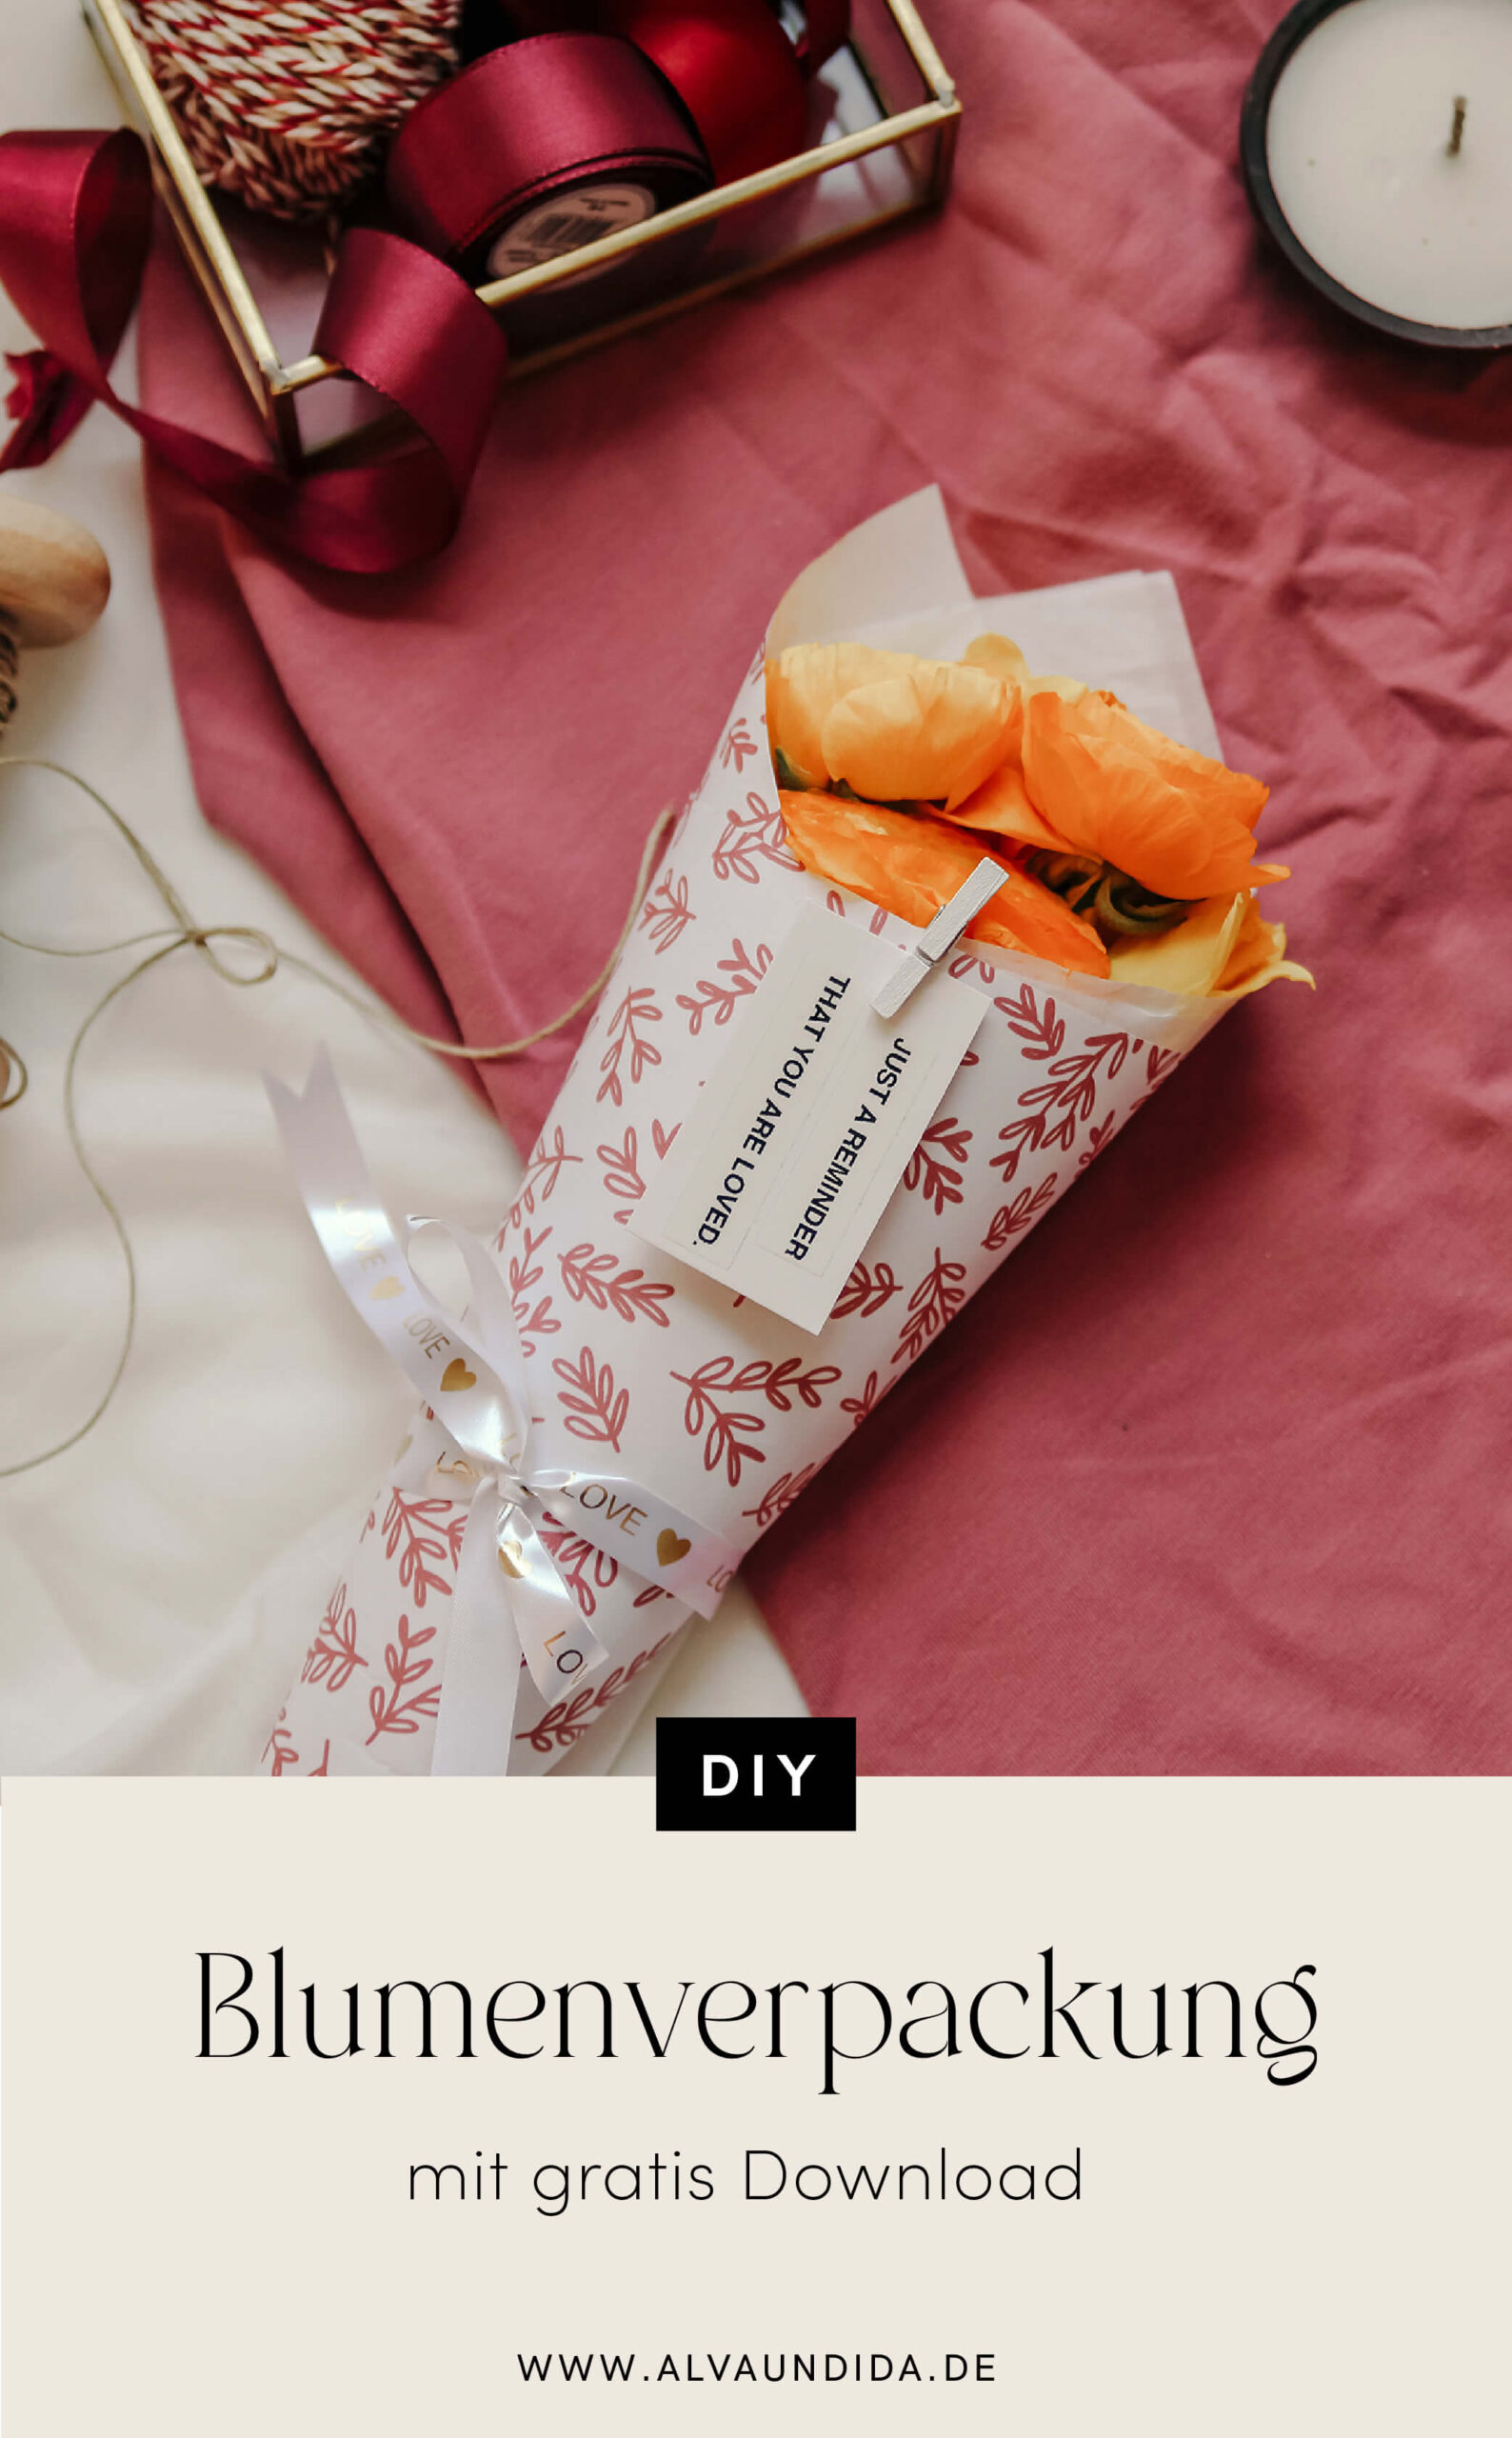 Alva & Ida - DIY Blog, Nachhaltigkeit, Slow living - Blumenverpackung selber machen